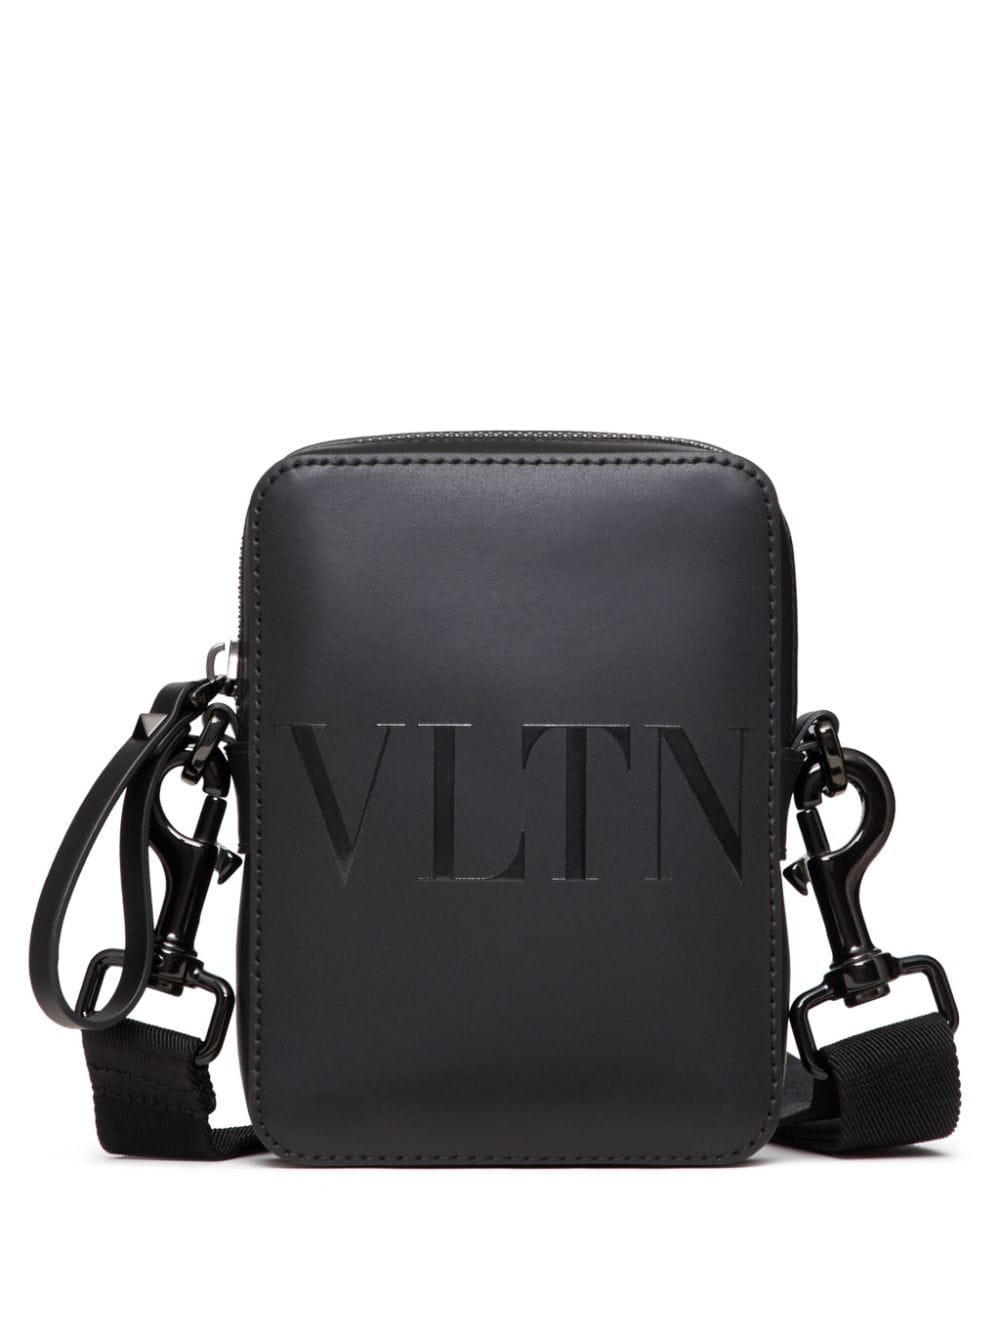 Image 1 of Valentino Garavani small VLTN leather shoulder bag